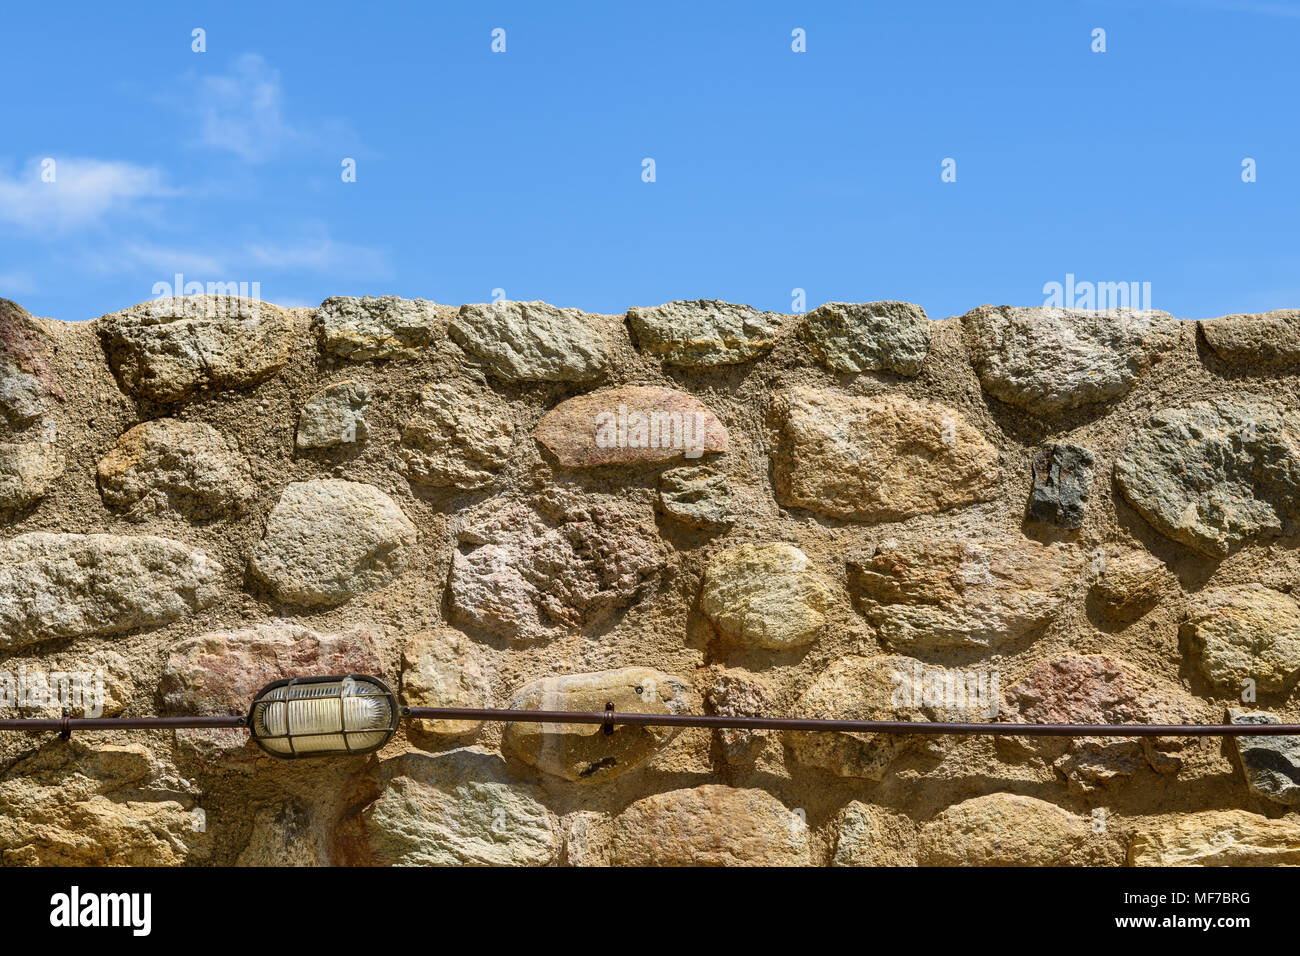 Einfache Hintergrund mit Wand aus verschieden große Steine gegen wolkenlosen Himmel und kleinen outdoor Lampe an der Unterseite Stockfoto